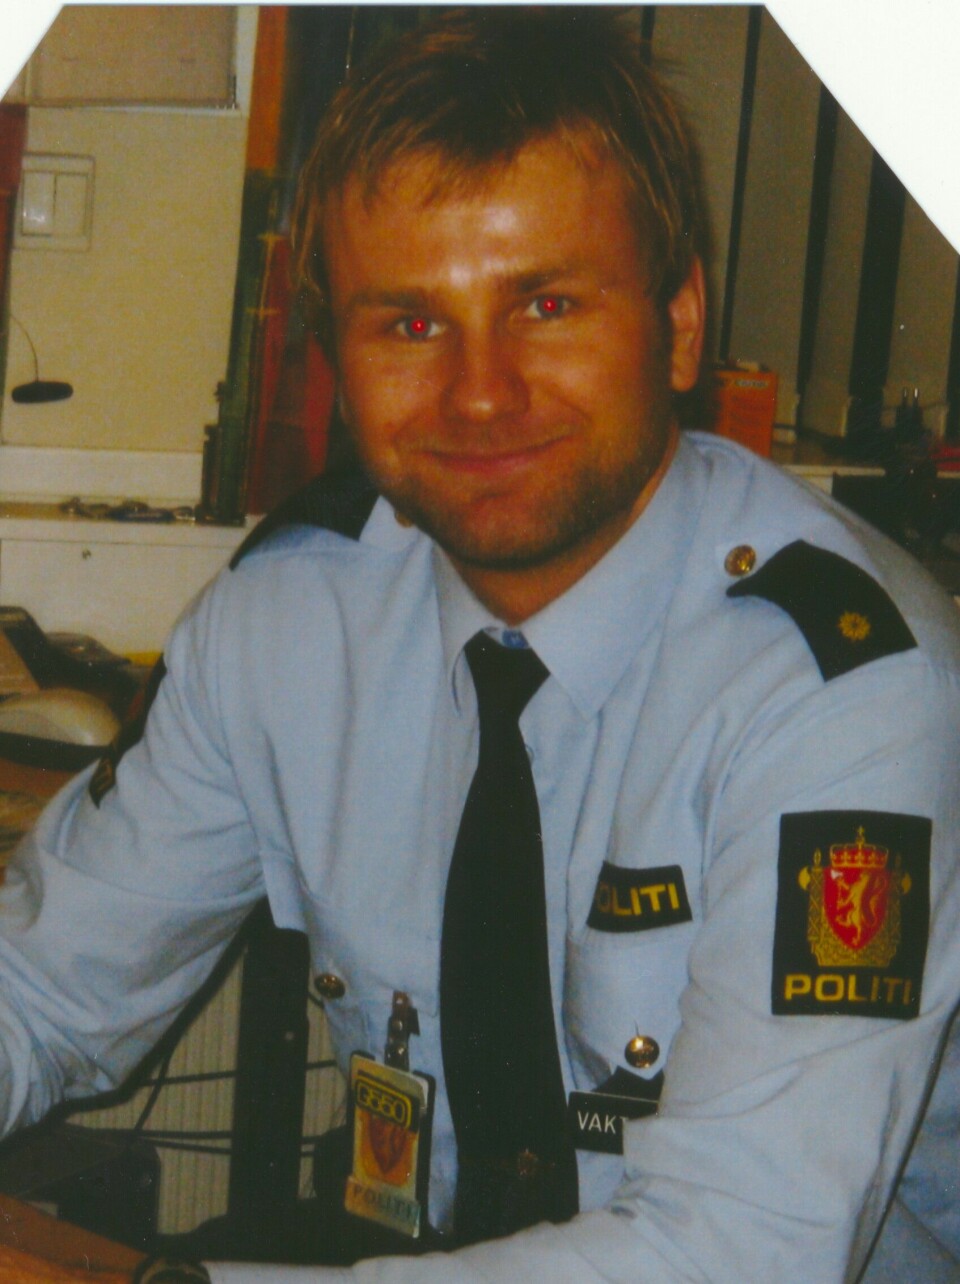 DRØMMEJOBBEN: Det var politi Stian skulle bli. Her er han på jobb i Lillestrøm i 2007.